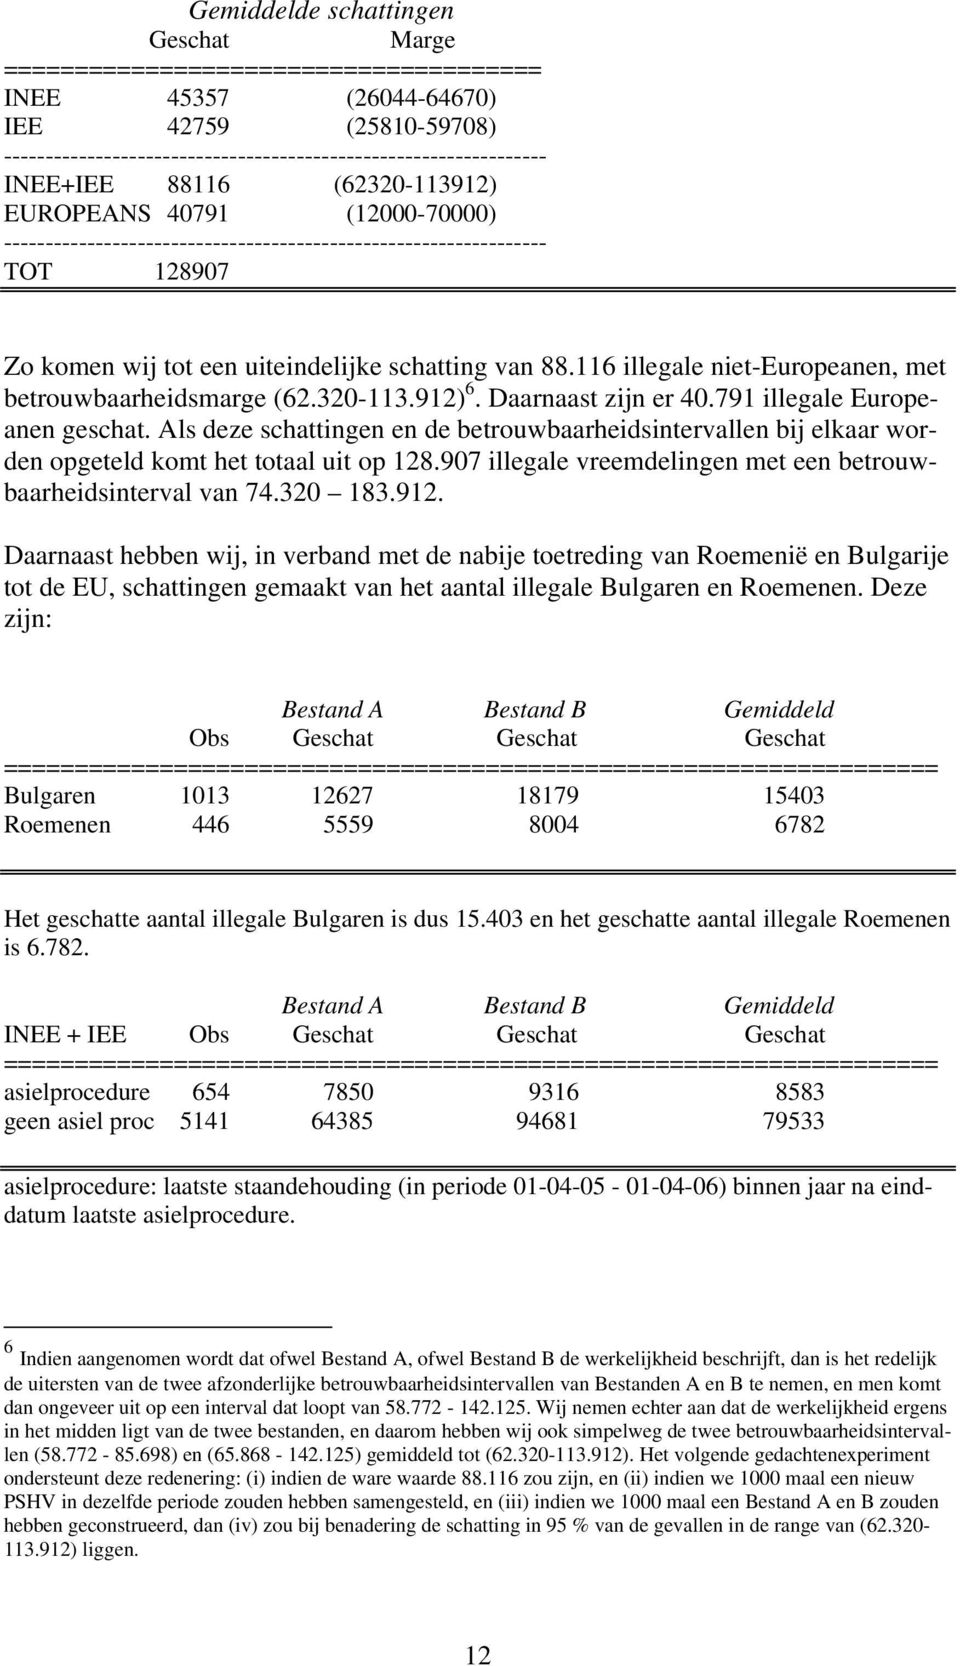 116 illegale niet-europeanen, met betrouwbaarheidsmarge (62.320-113.912) 6. Daarnaast zijn er 40.791 illegale Europeanen geschat.